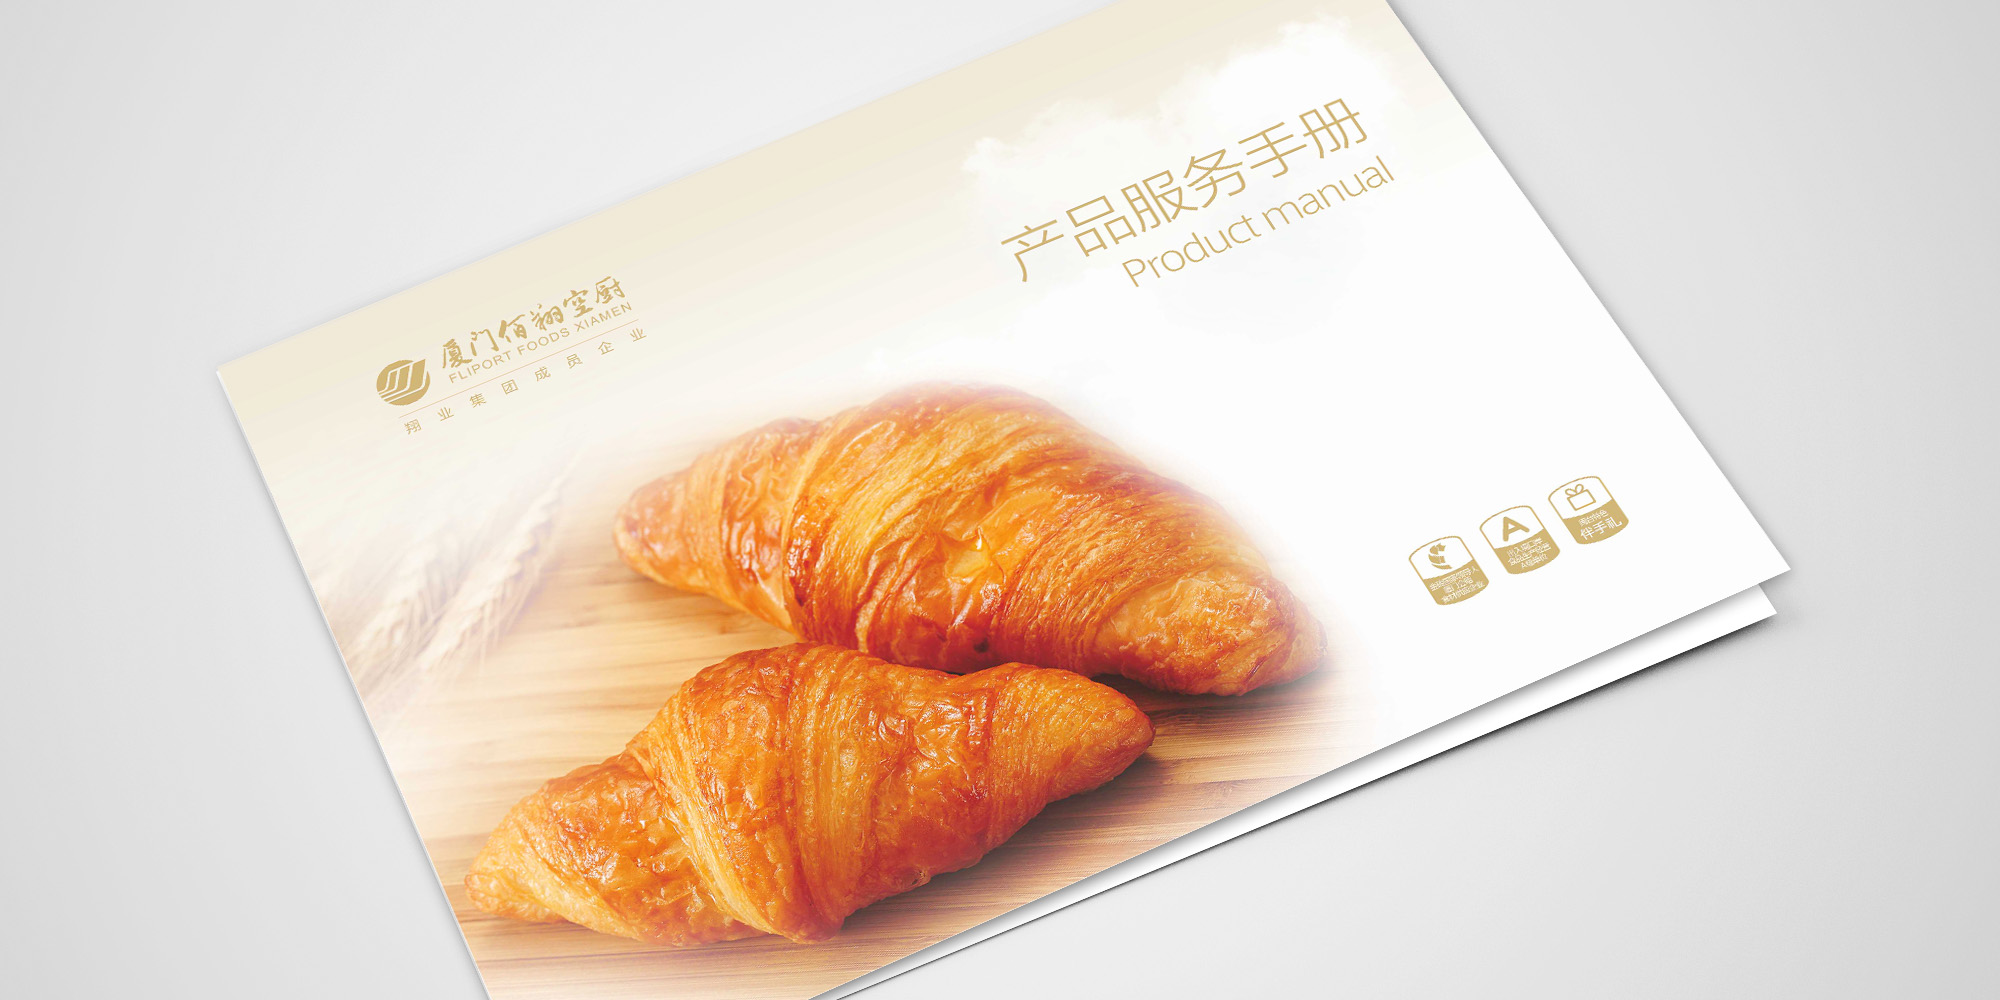 佰翔冷冻食品手册目录、折页宣传单页、产品画册设计